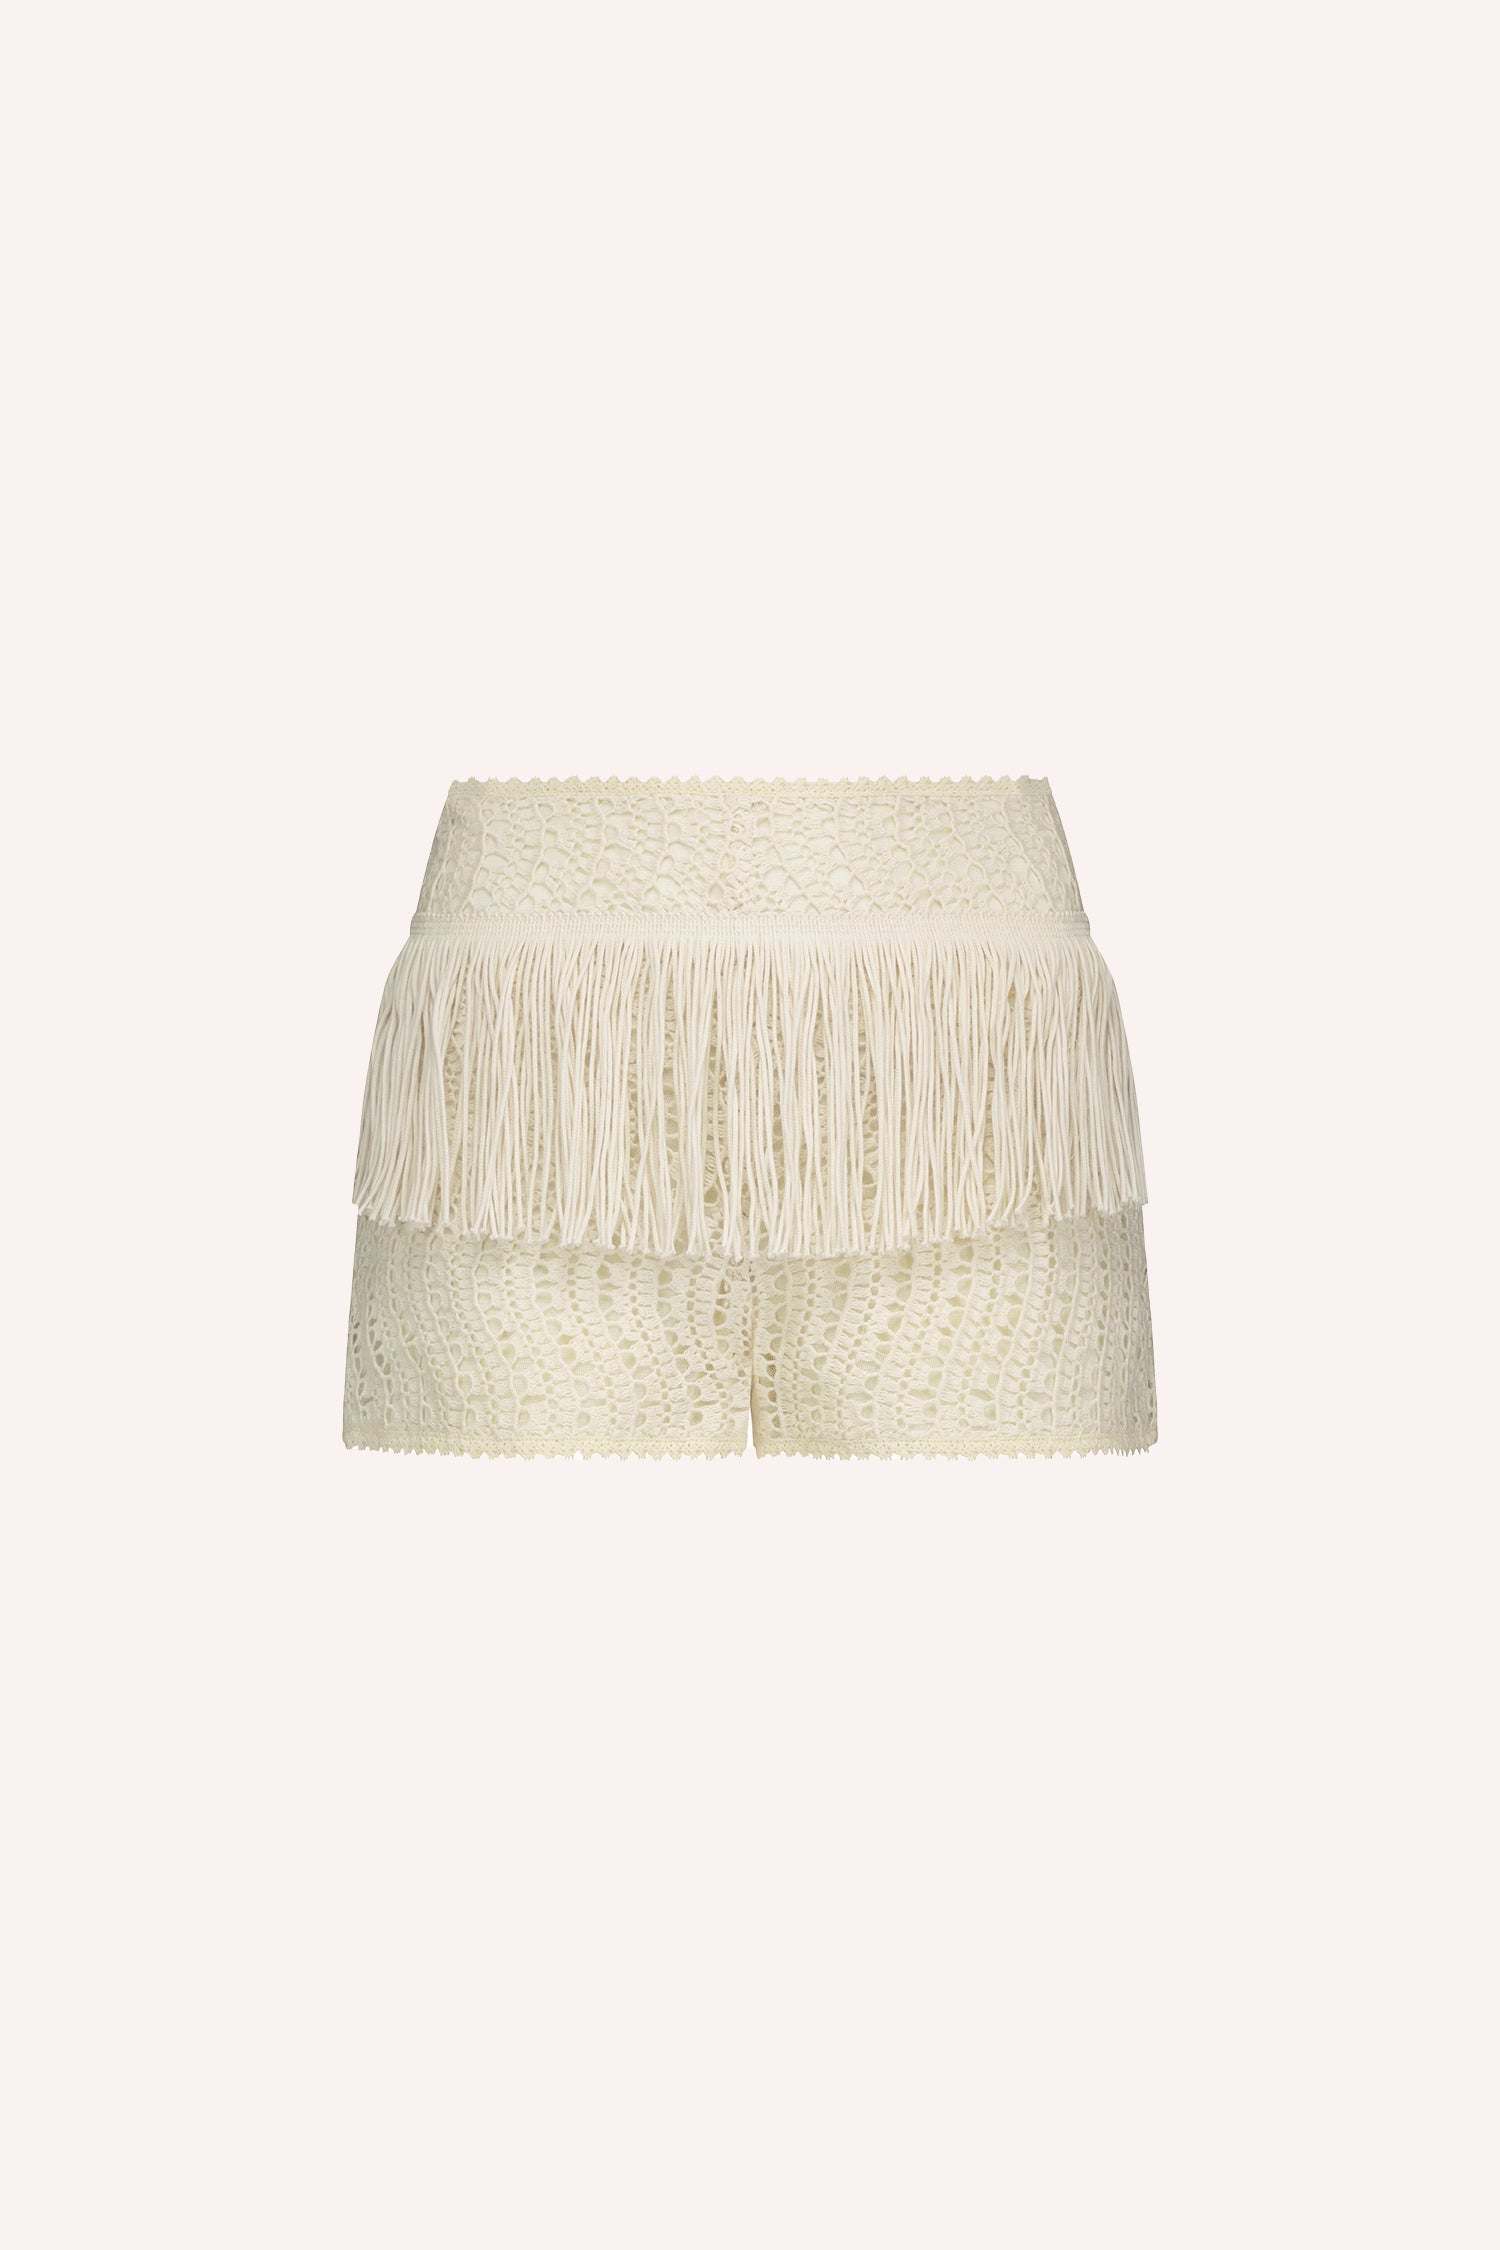 Anna Sui 鉤編蕾絲短褲奶油，臀部有一條短流蘇腰帶， 